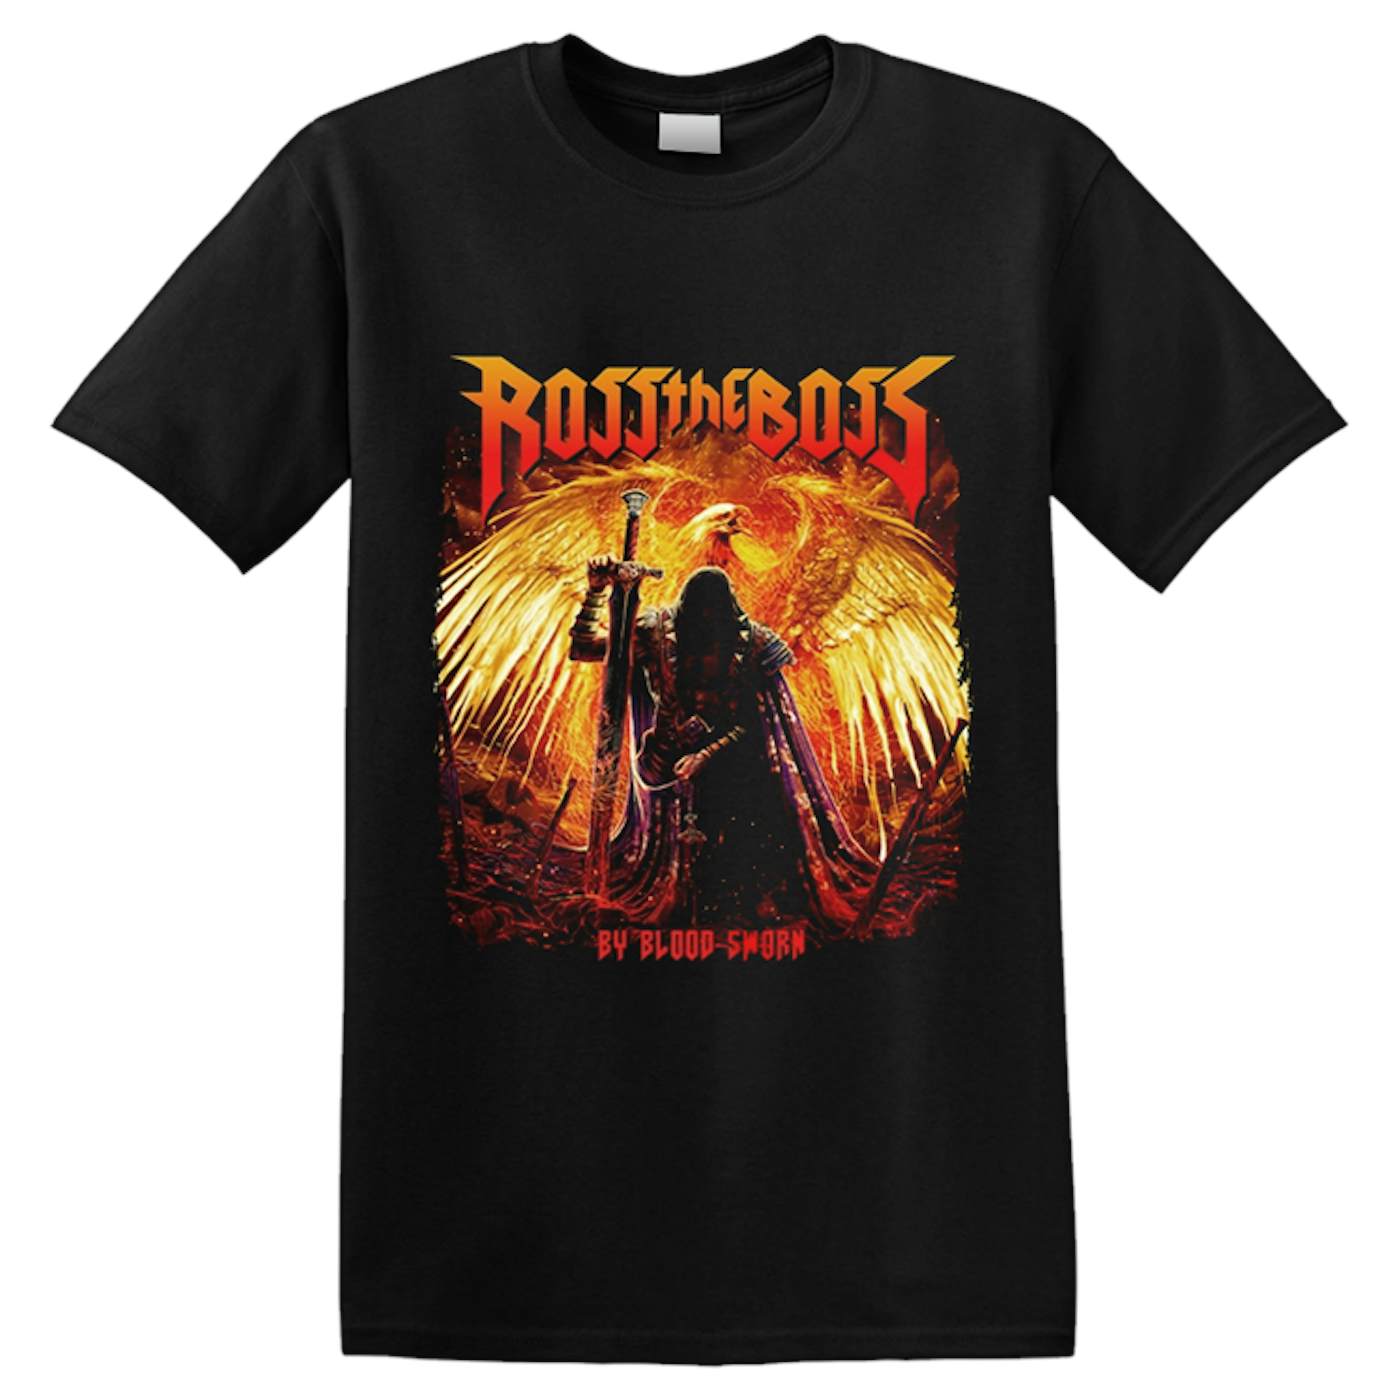 ROSS THE BOSS - 'By Blood Sworn' T-Shirt